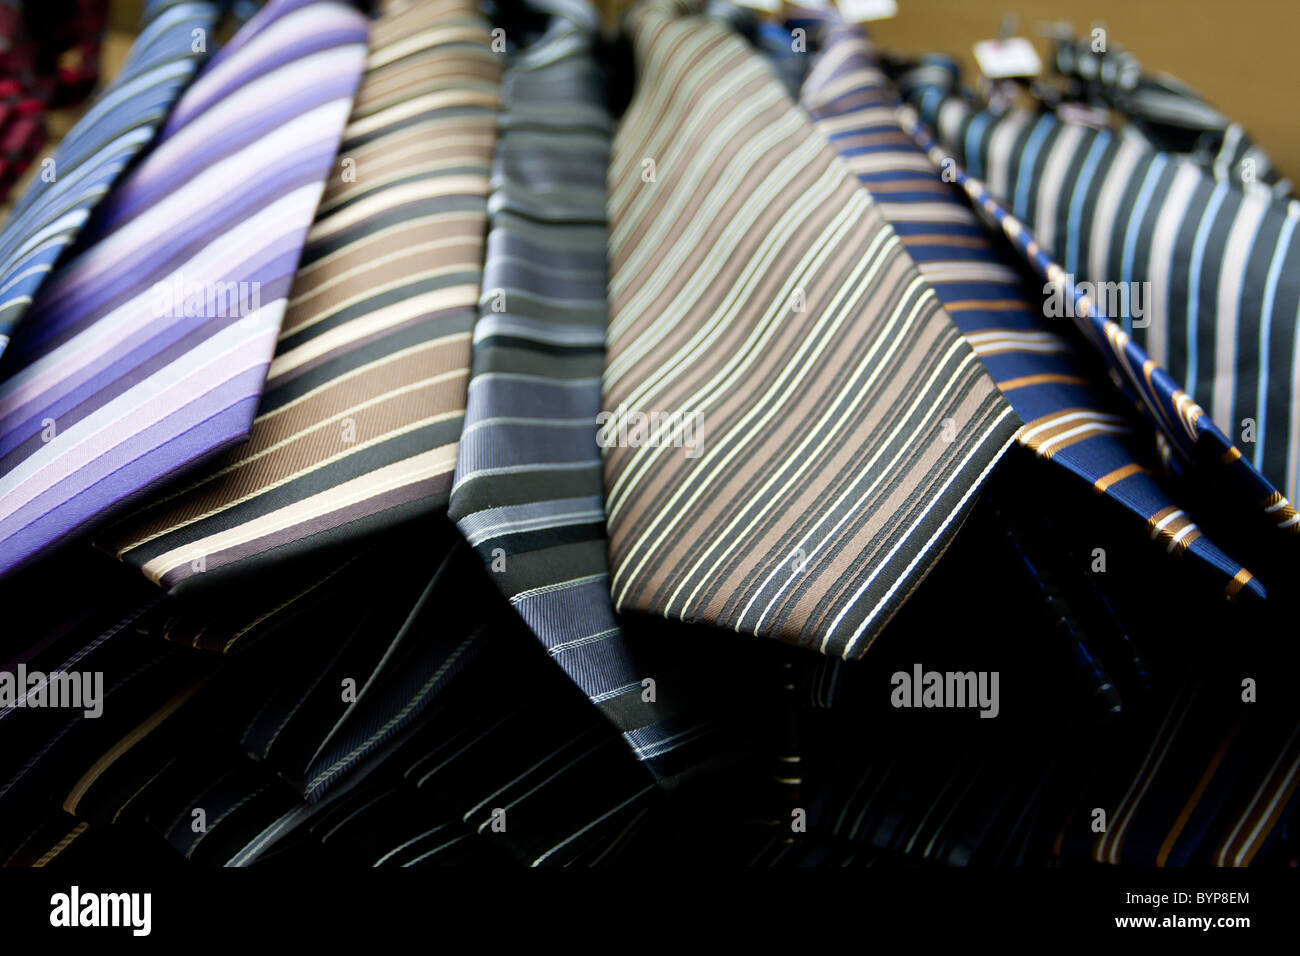 Eine Sammlung von bunten Krawatten in einem Speicher, Low Angle View, Sao Paulo, Brasilien Stockfoto